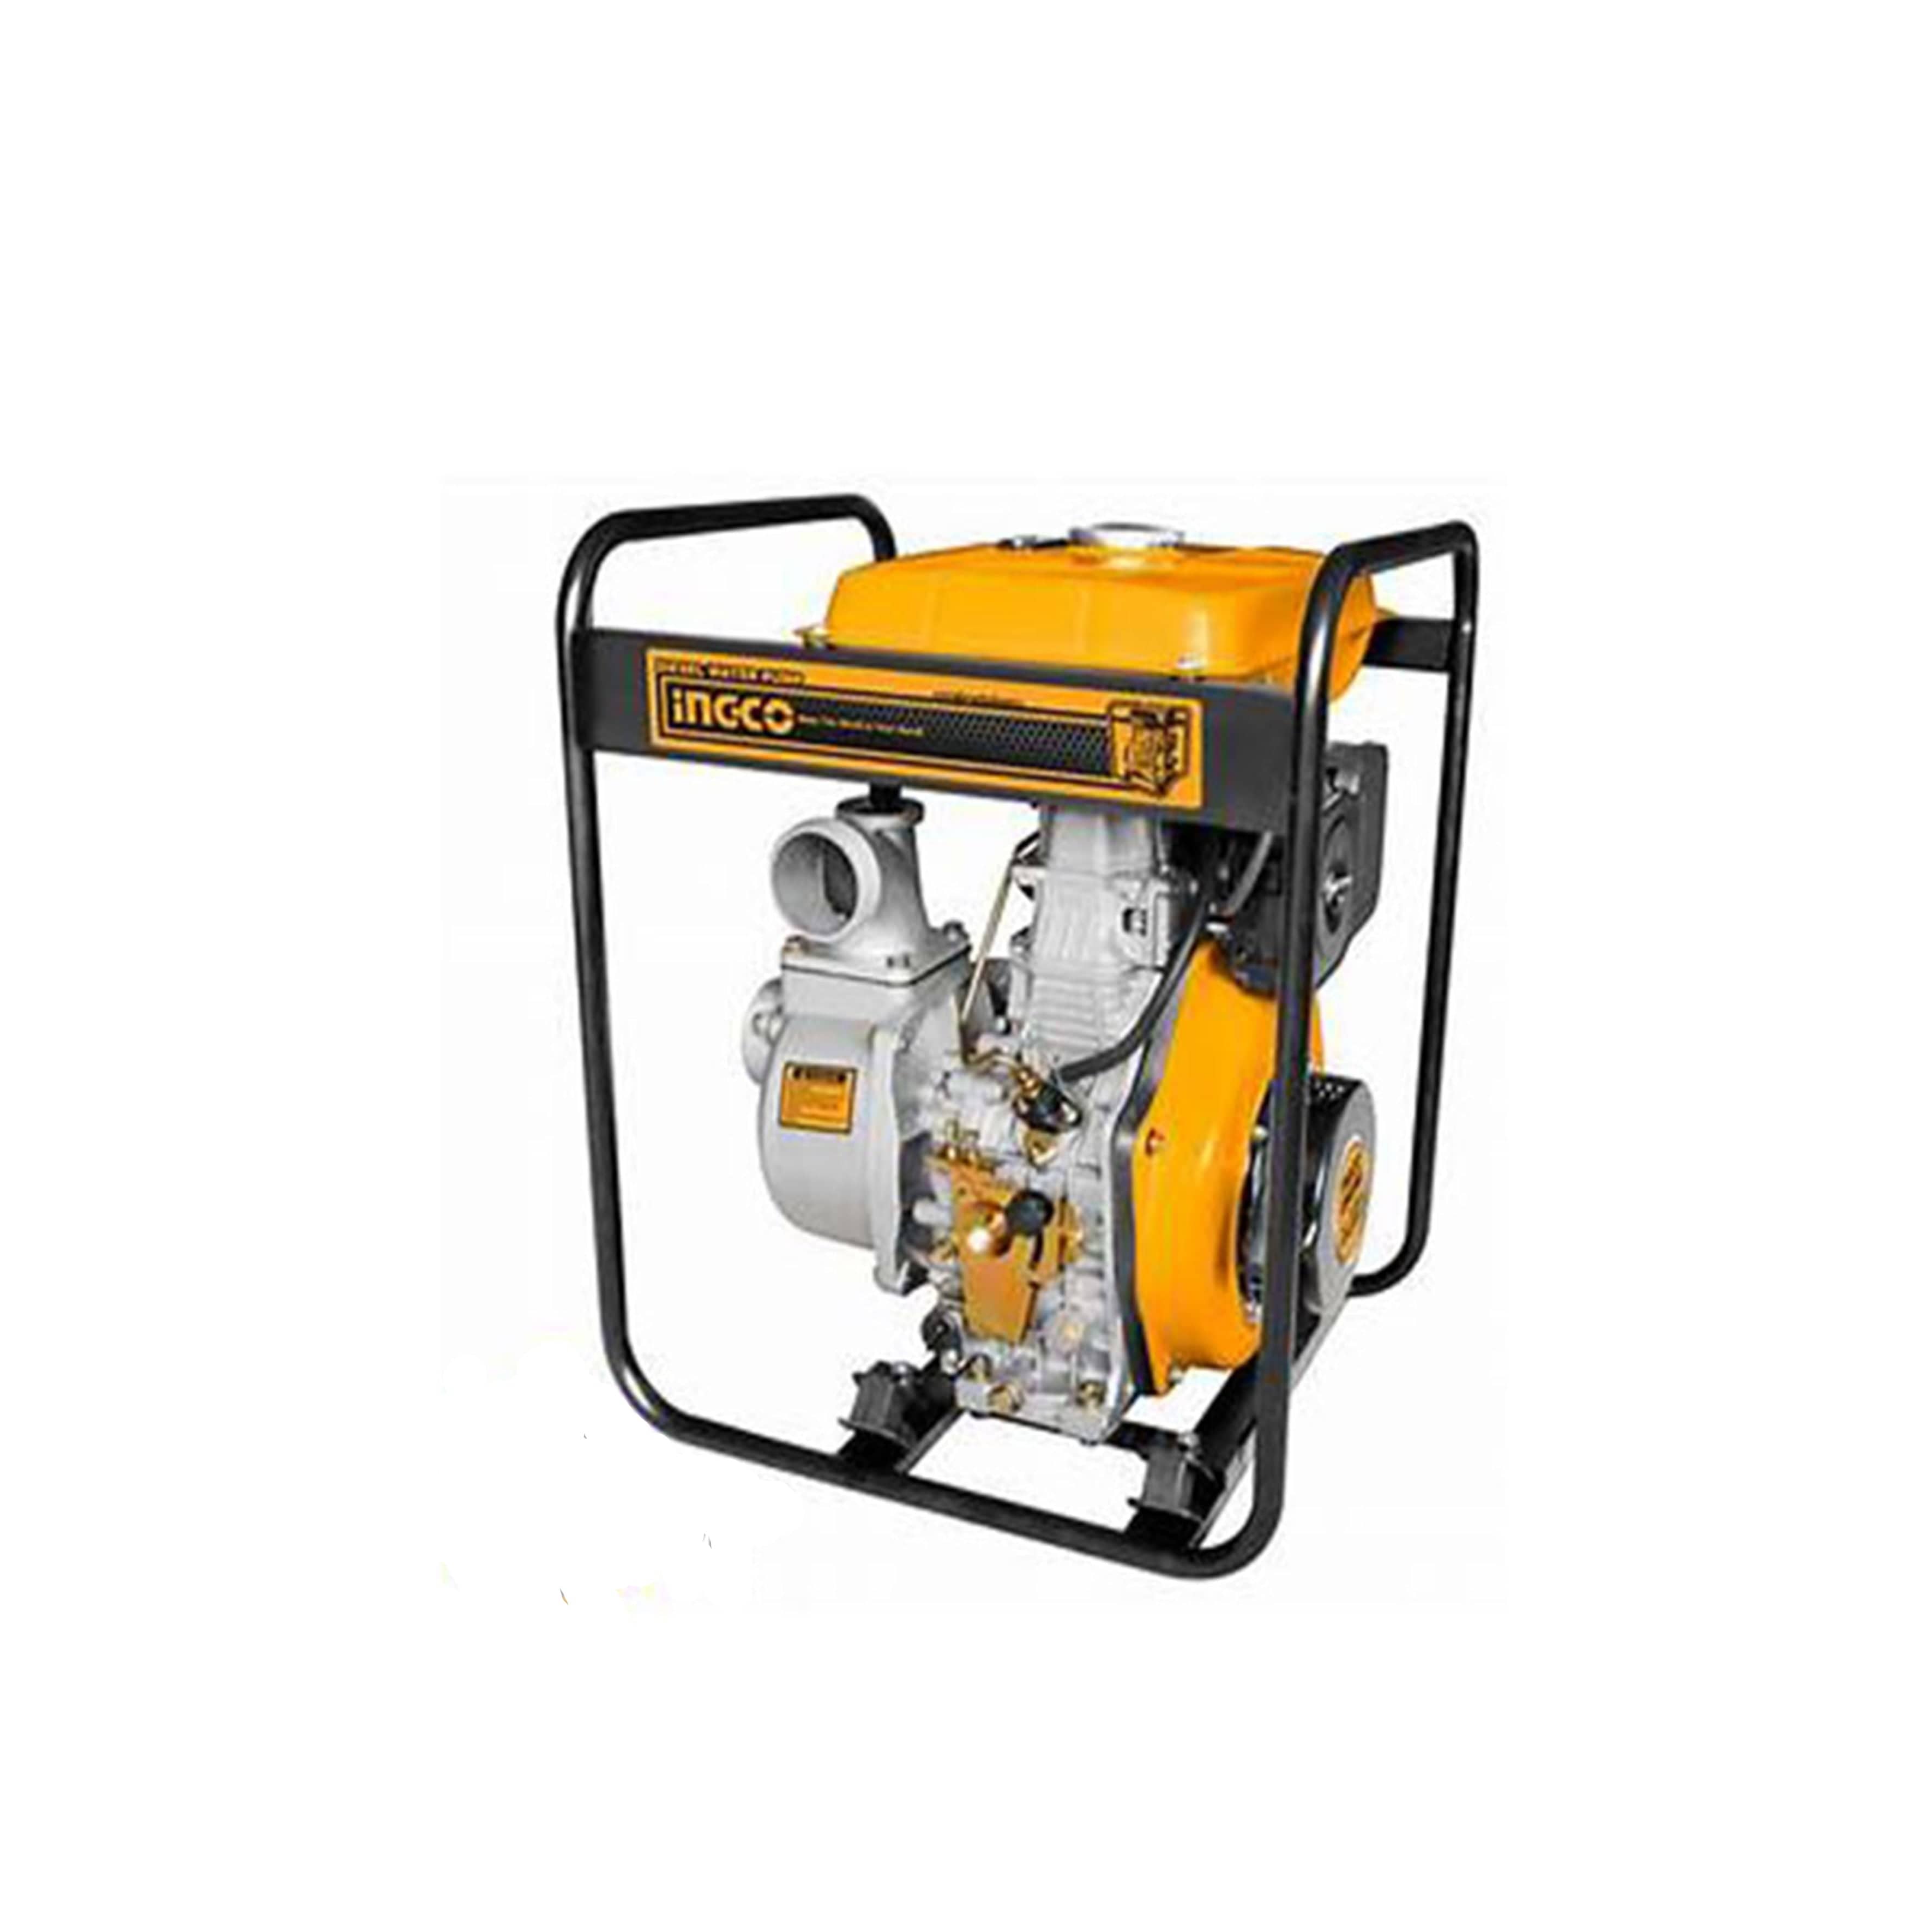 Ingco 4" Diesel Pump 8.3HP - GEP401 | Supply Master | Accra, Ghana Diesel Pump Buy Tools hardware Building materials